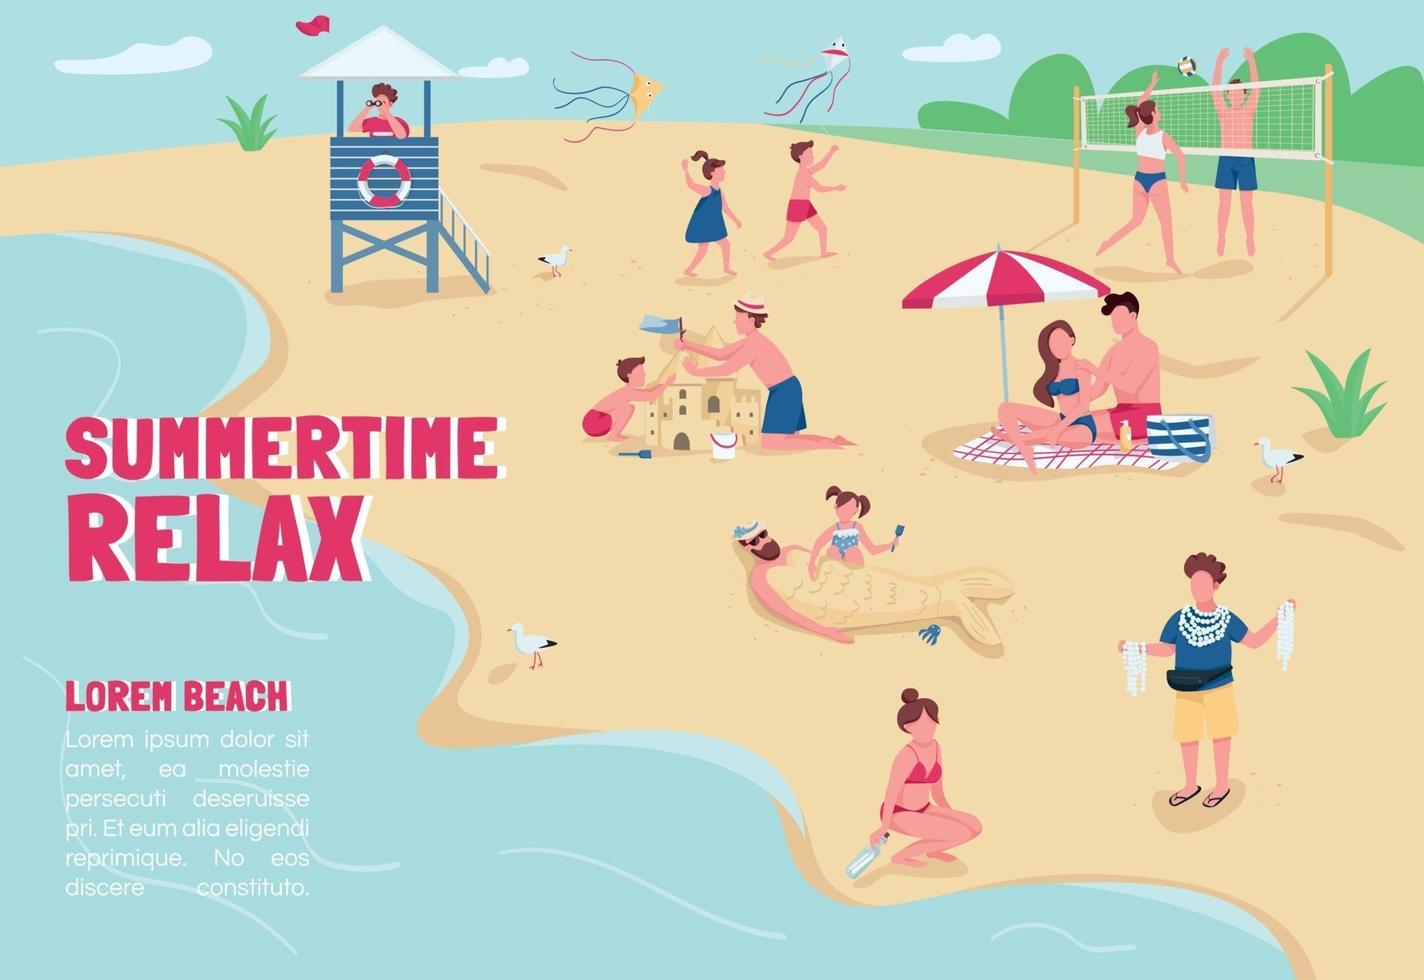 Summertime relax banner flat vector template